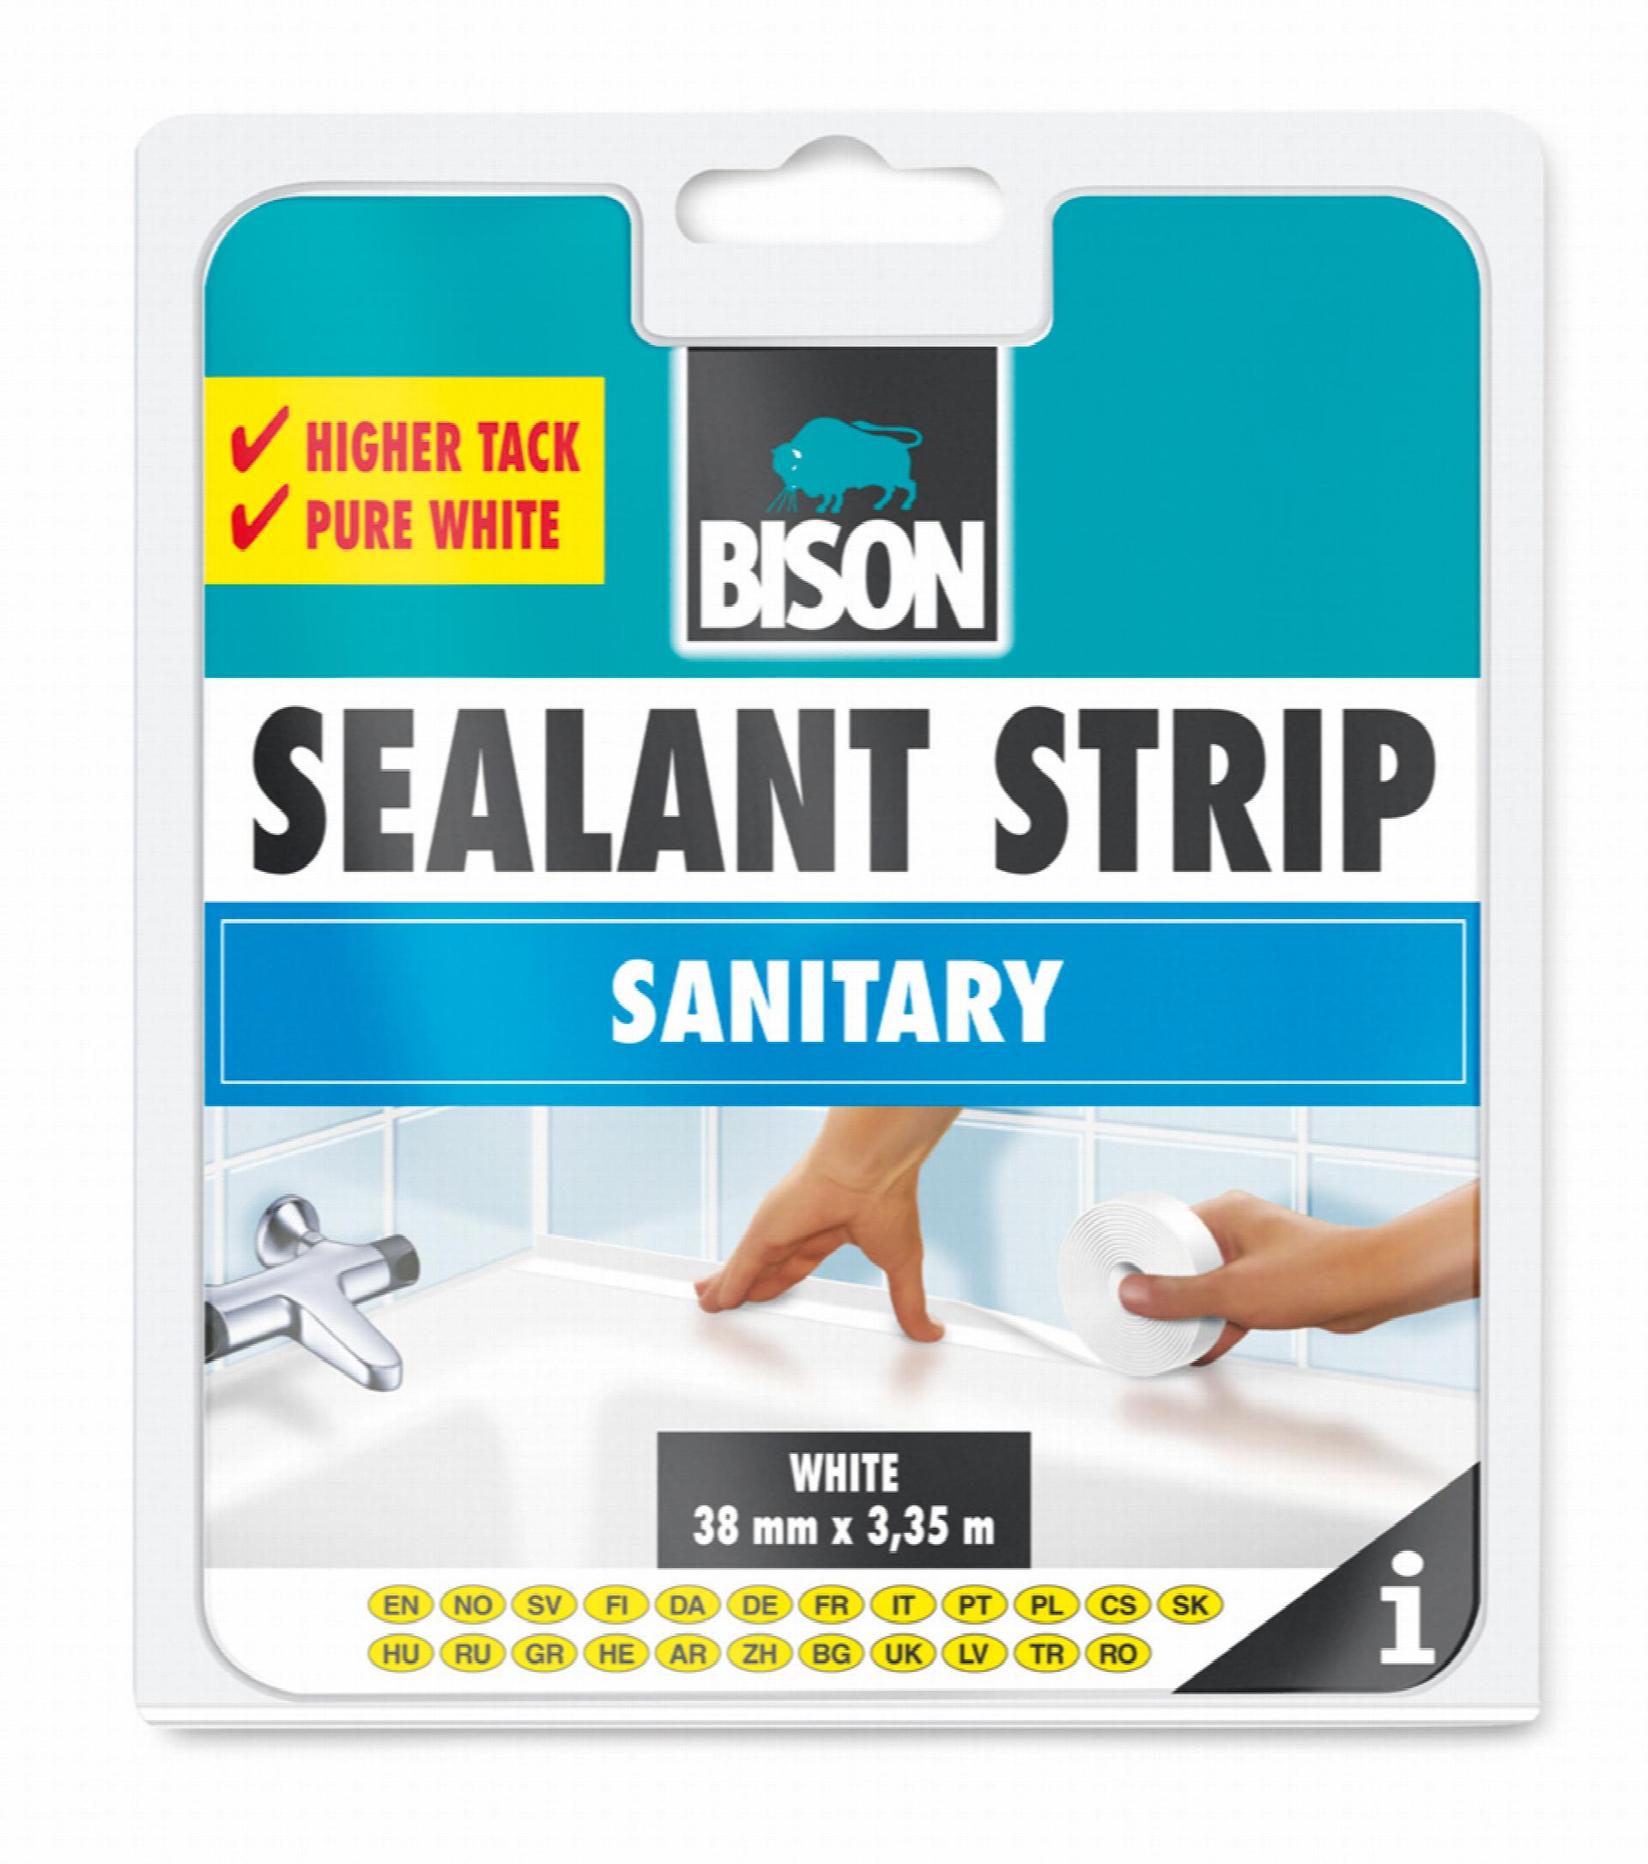 BISON Sealantstrip Sanitary 22 mm X 3,35 m 041926